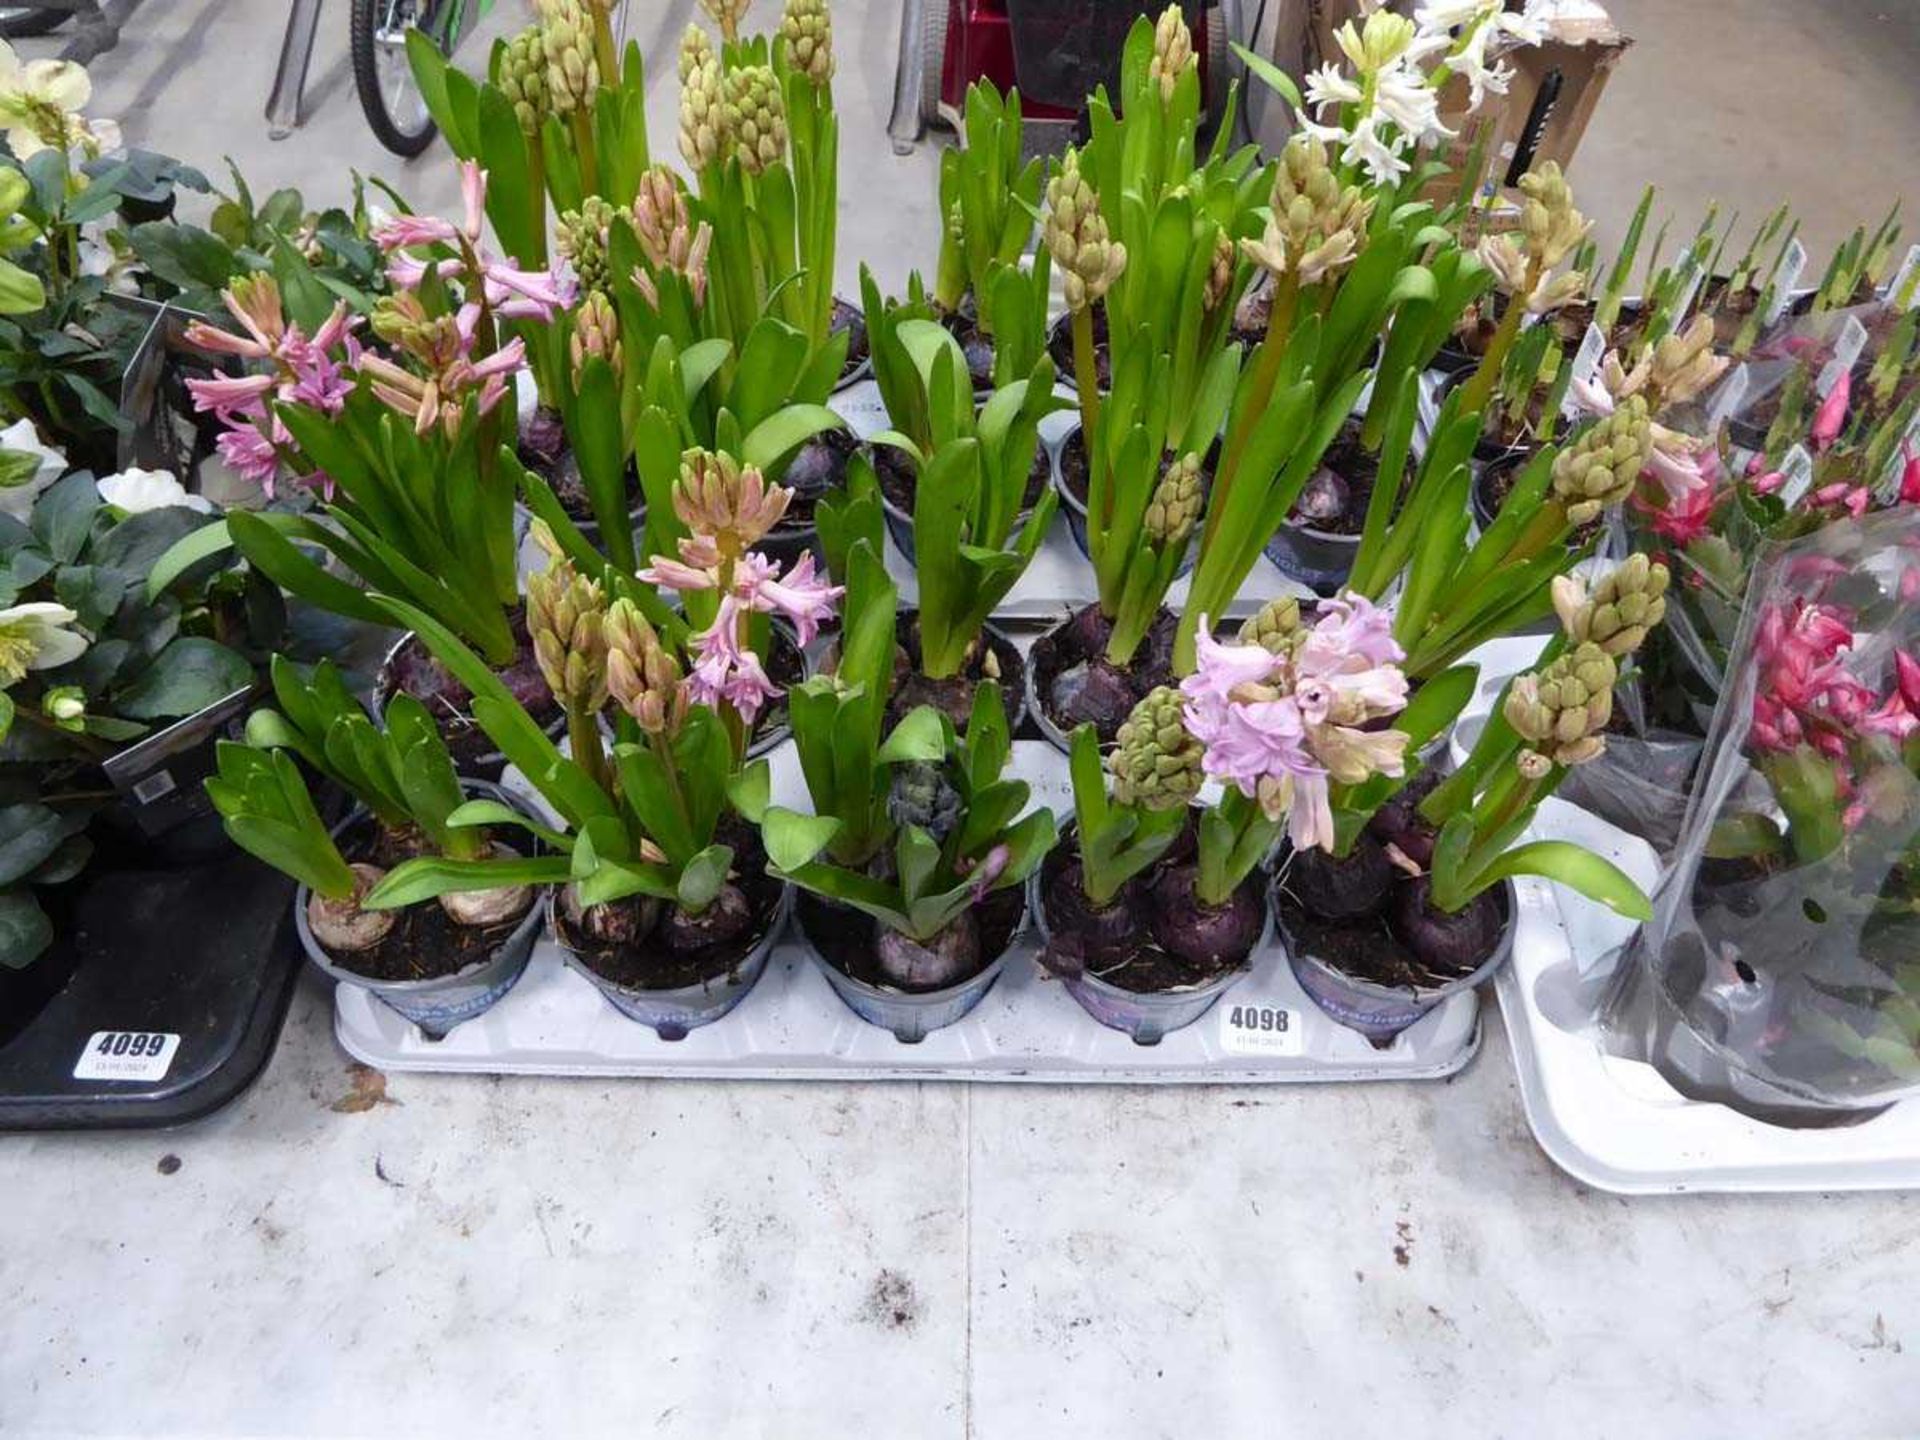 Tray of hyacinth bulbs